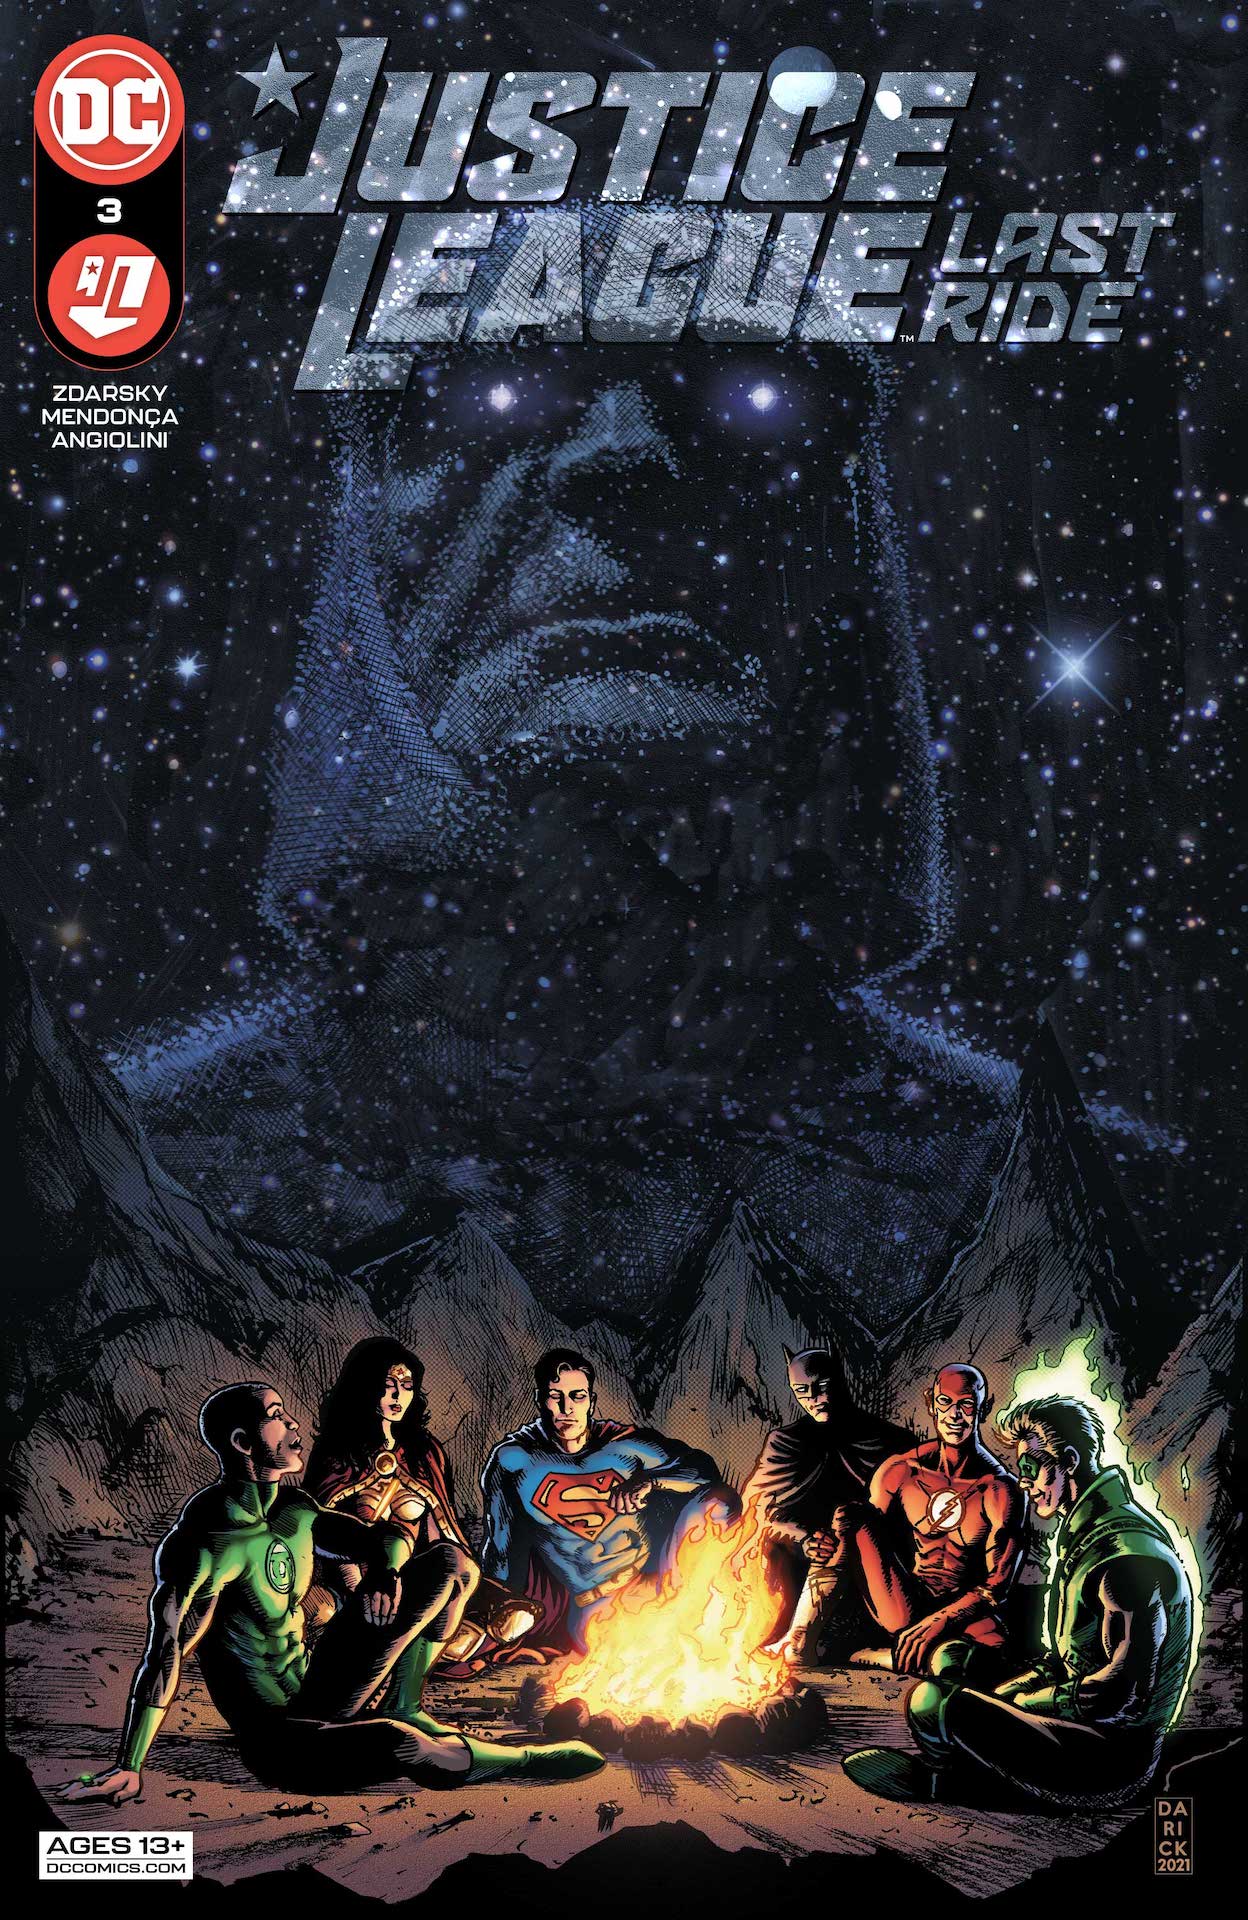 DC Preview: Justice League: Last Ride #3